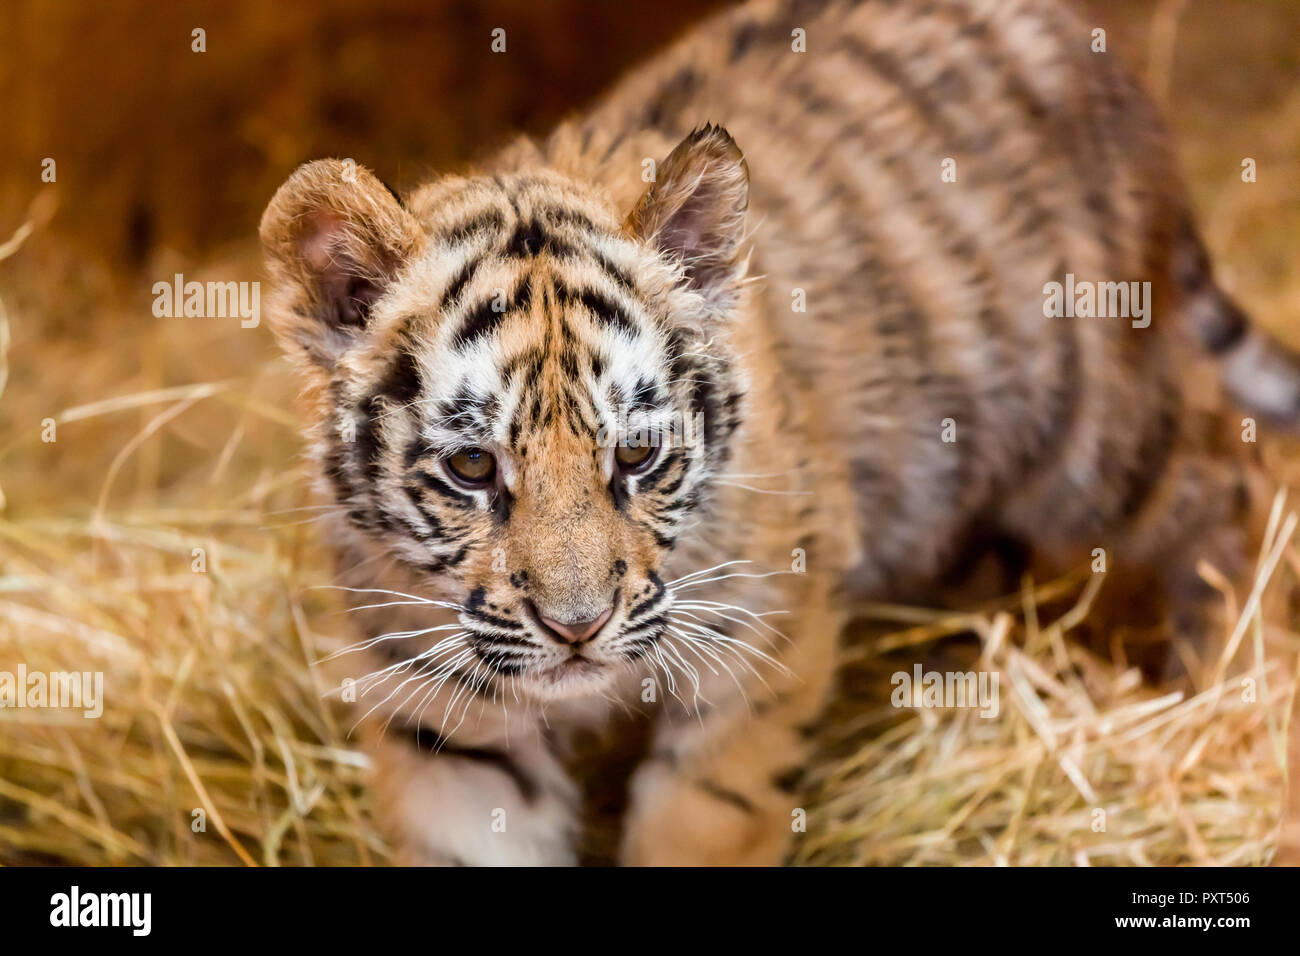 Un bébé tigre marchant à travers le foin à l'intention très à sa proie Banque D'Images